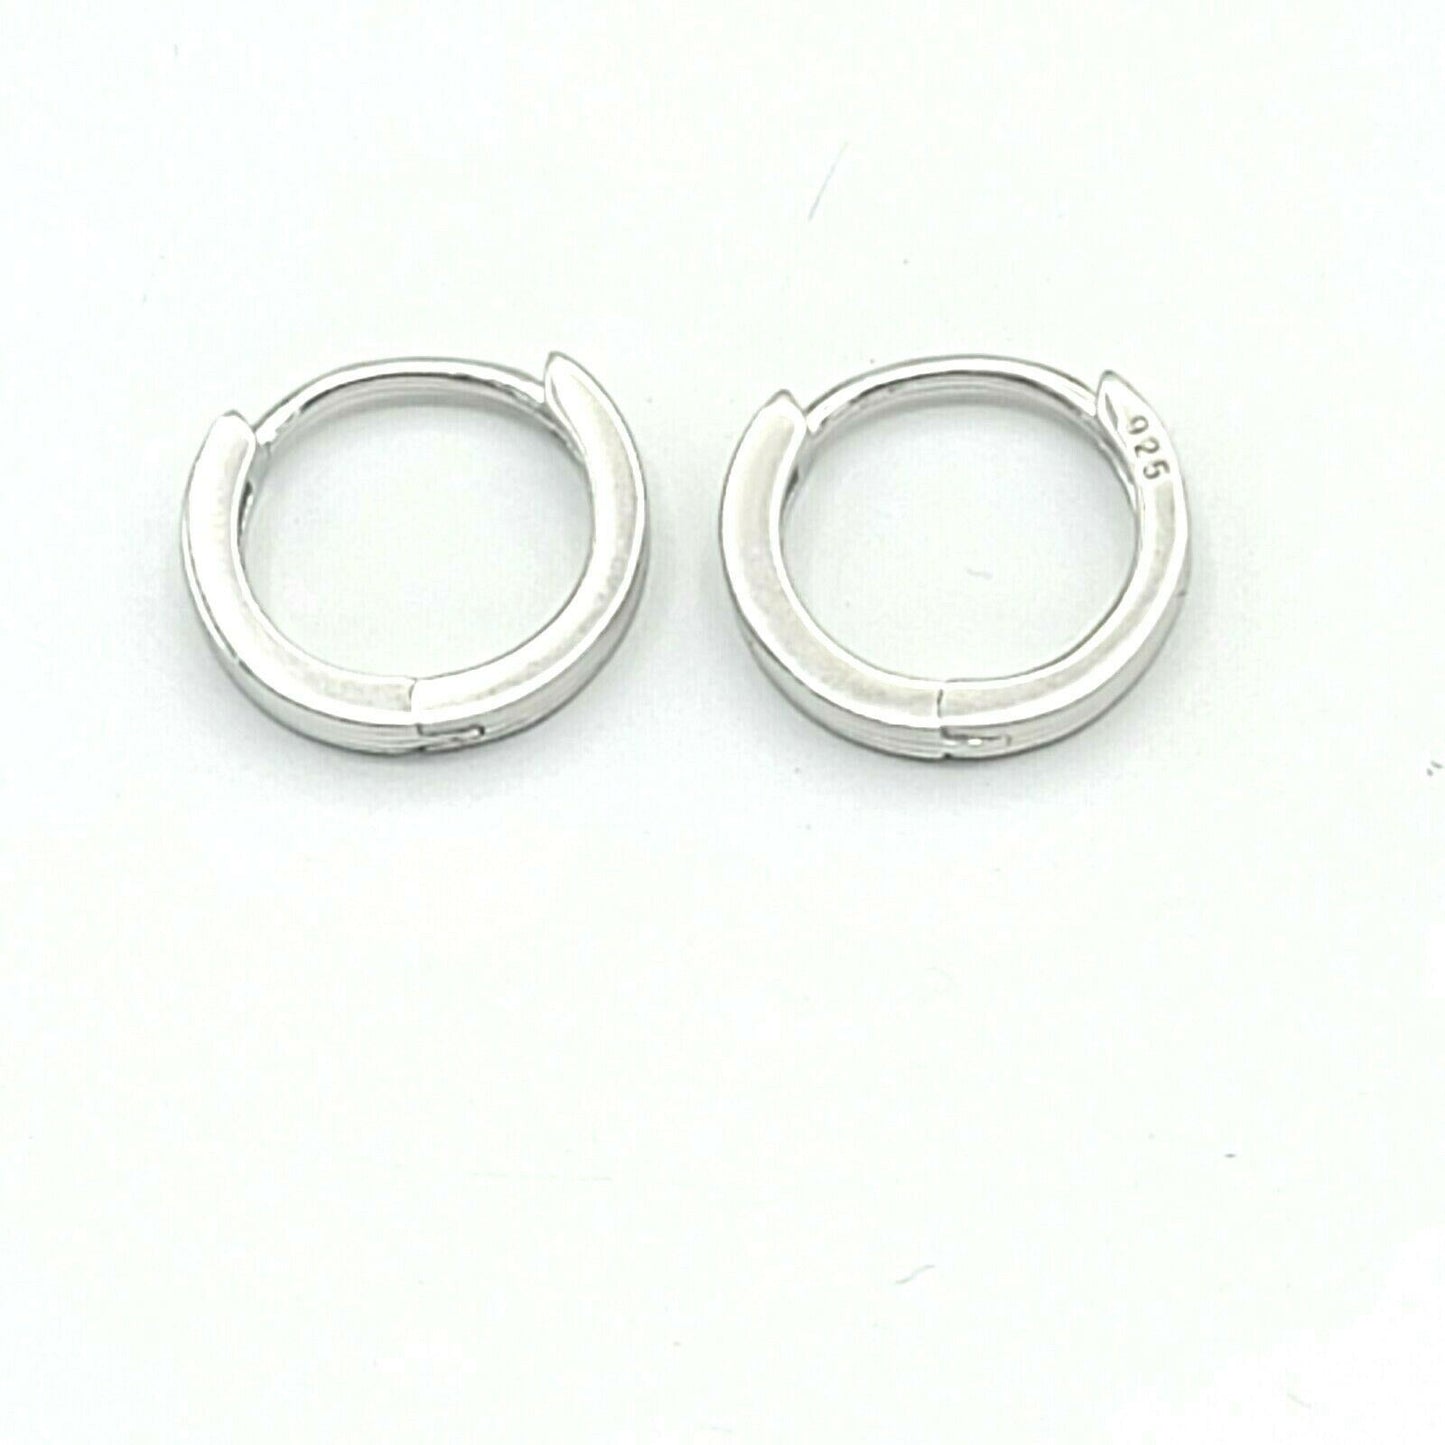 Solid 925 Sterling Silver. Plain Hoop 2mm Earrings. Unisex Stylish Men Women